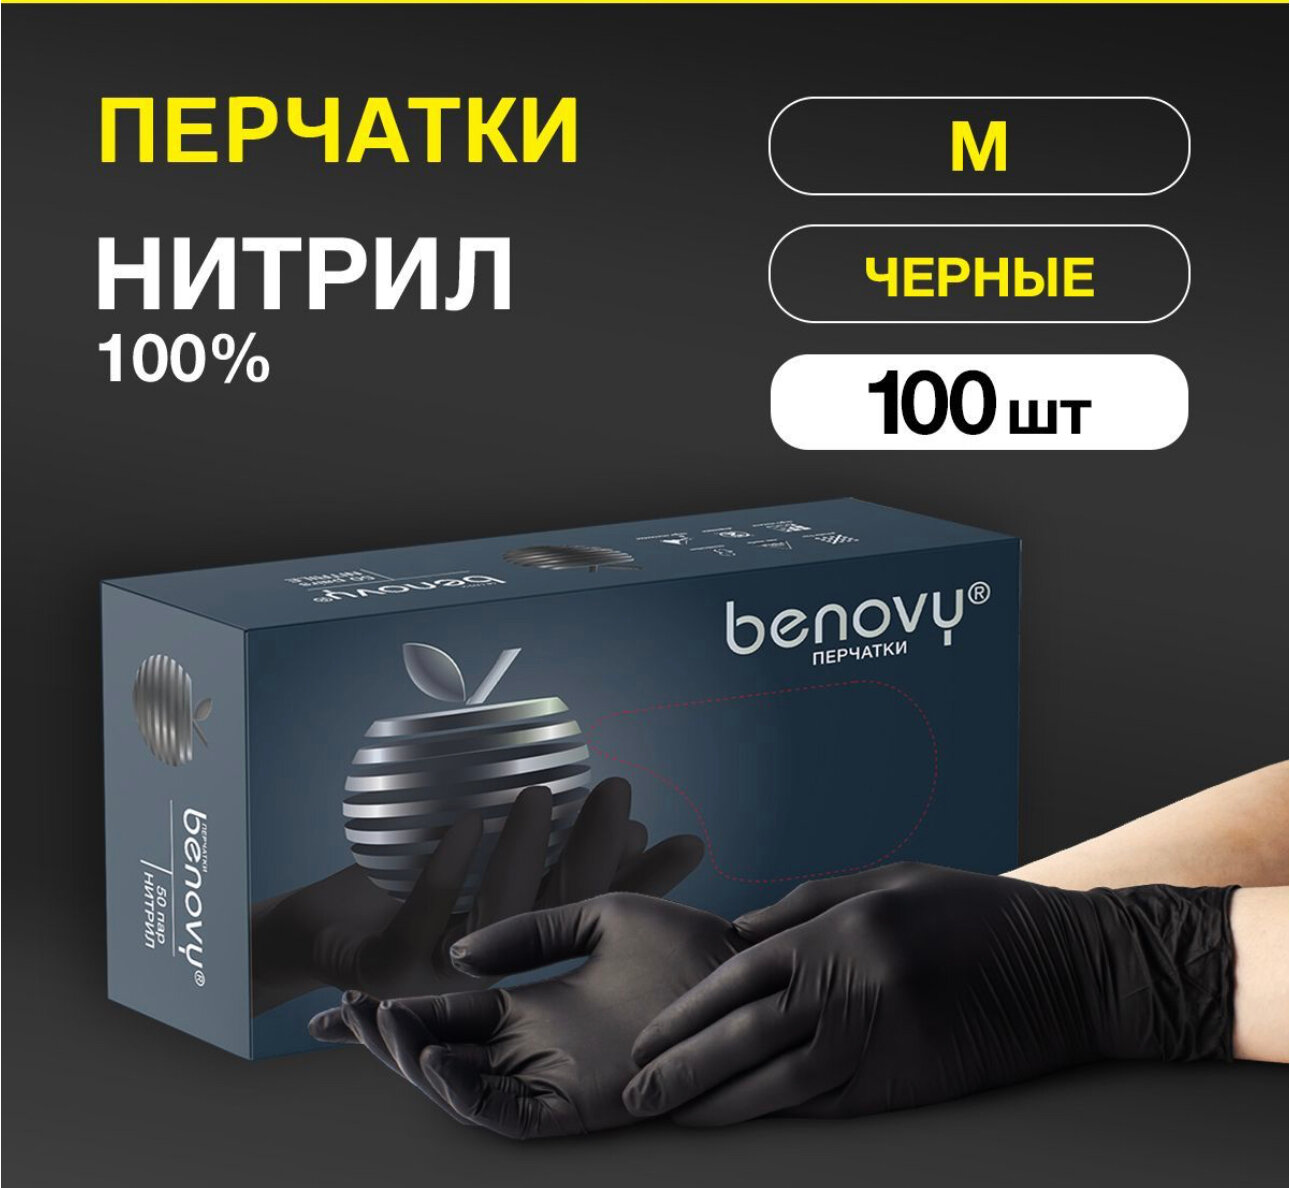 Перчатки Benovy нитриловые, черные, одноразовые, 100шт/50пар, размер M